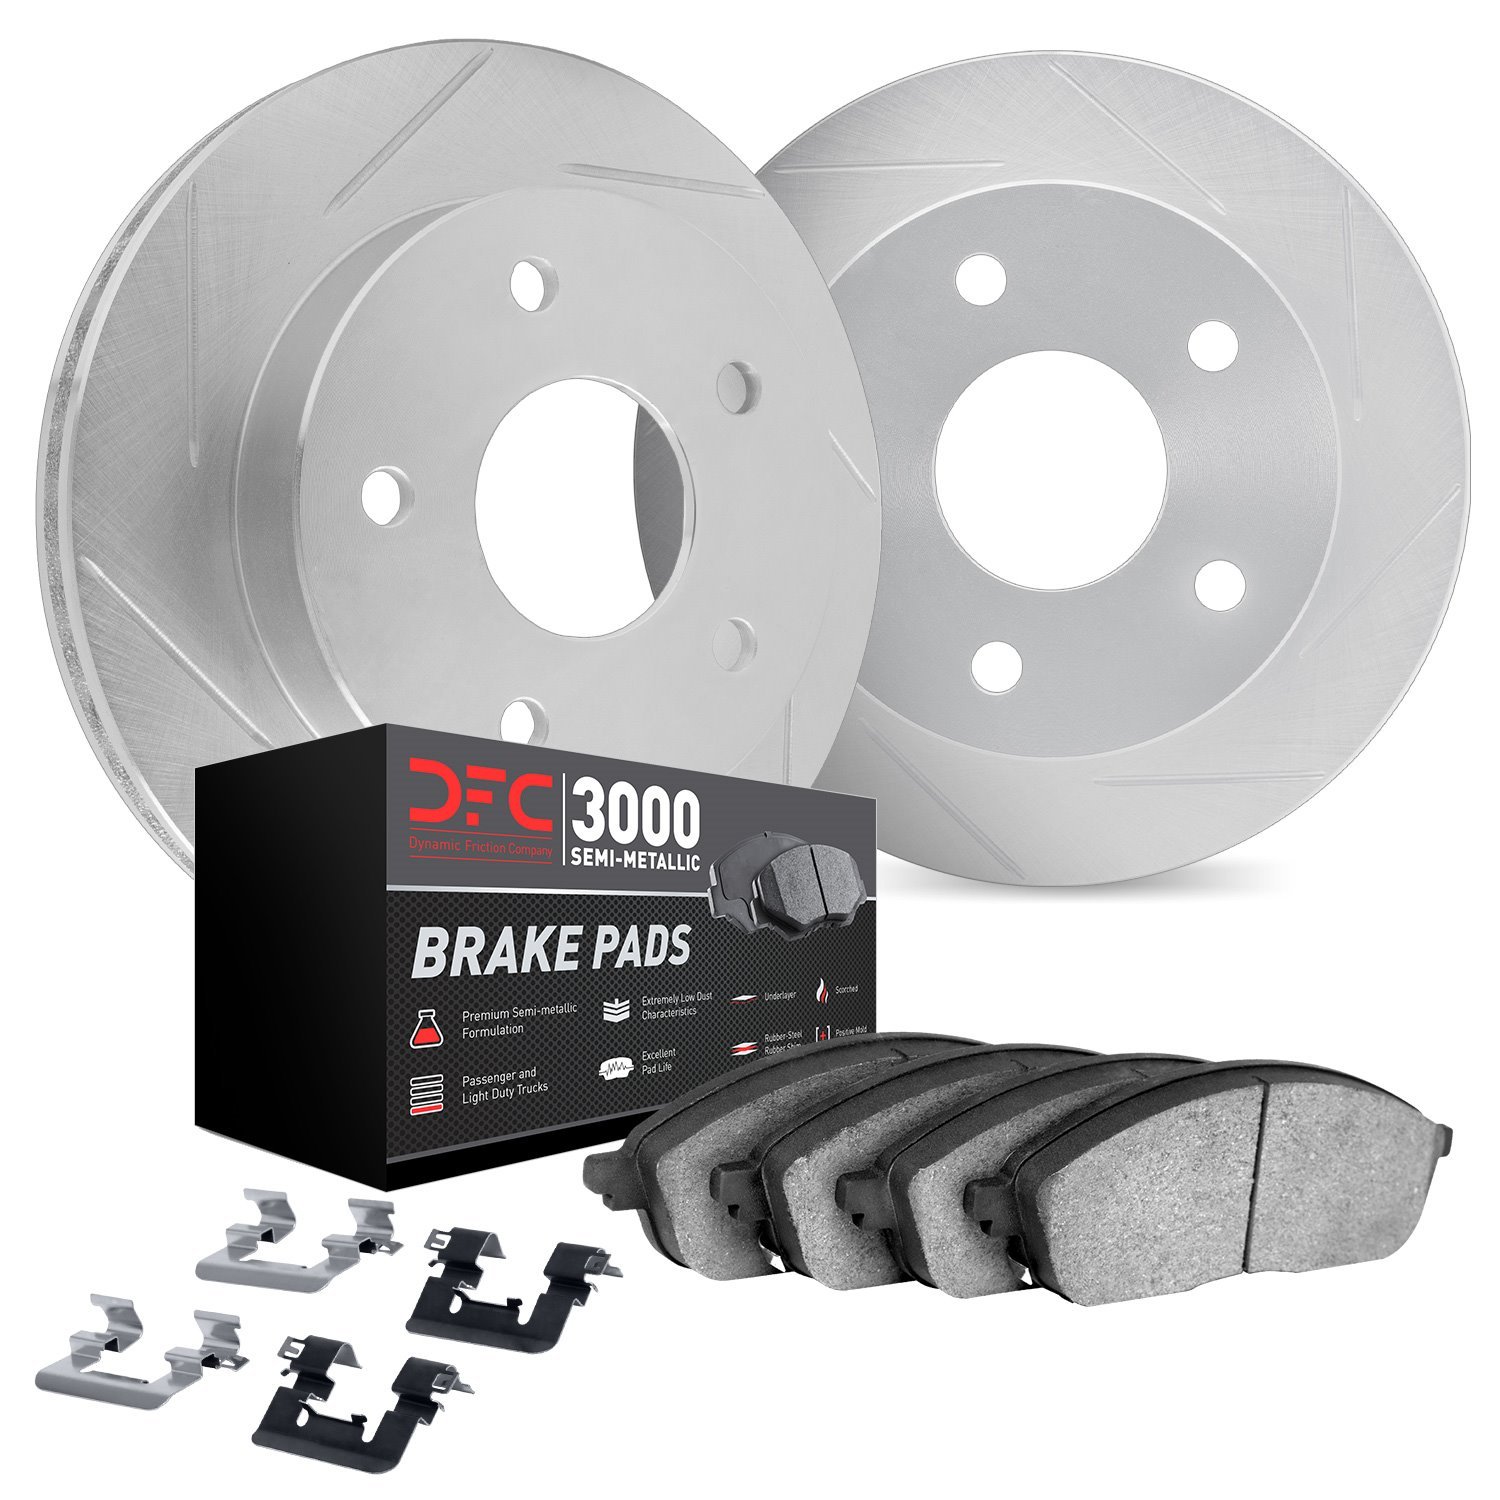 5112-63110 Slotted Brake Rotors with 3000-Series Semi-Metallic Brake Pads Kit & Hardware [Silver], 2006-2012 Mercedes-Benz, Posi